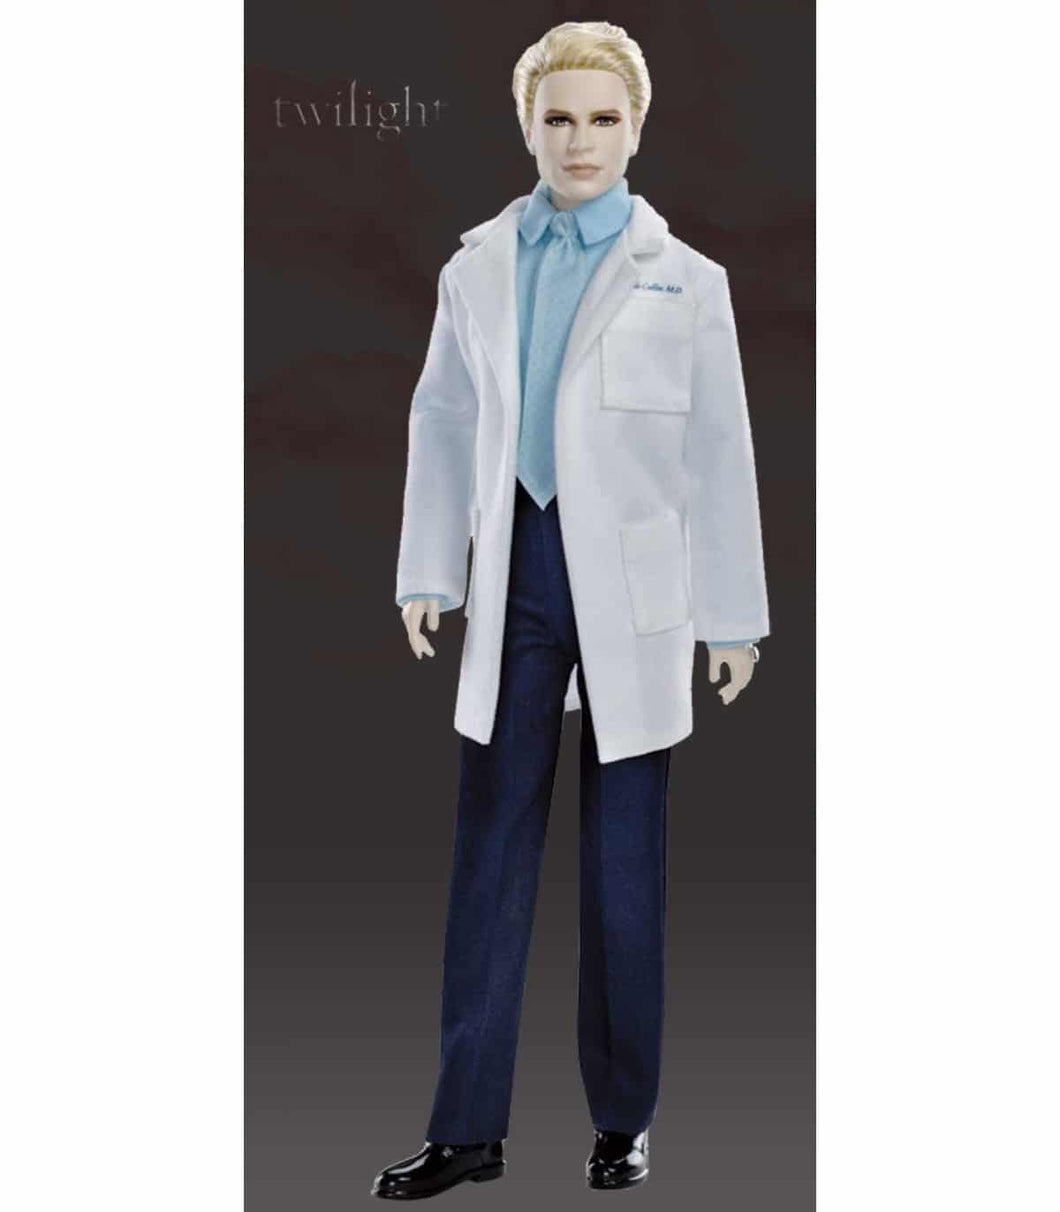 Muñeco del dr.Carlisle de la saga Crepusculo. Pertenece a la colección Barbie Collector, recreando los muñecos de la saga Crepúsculo o Twilight. Mide 30 cm aprox. 